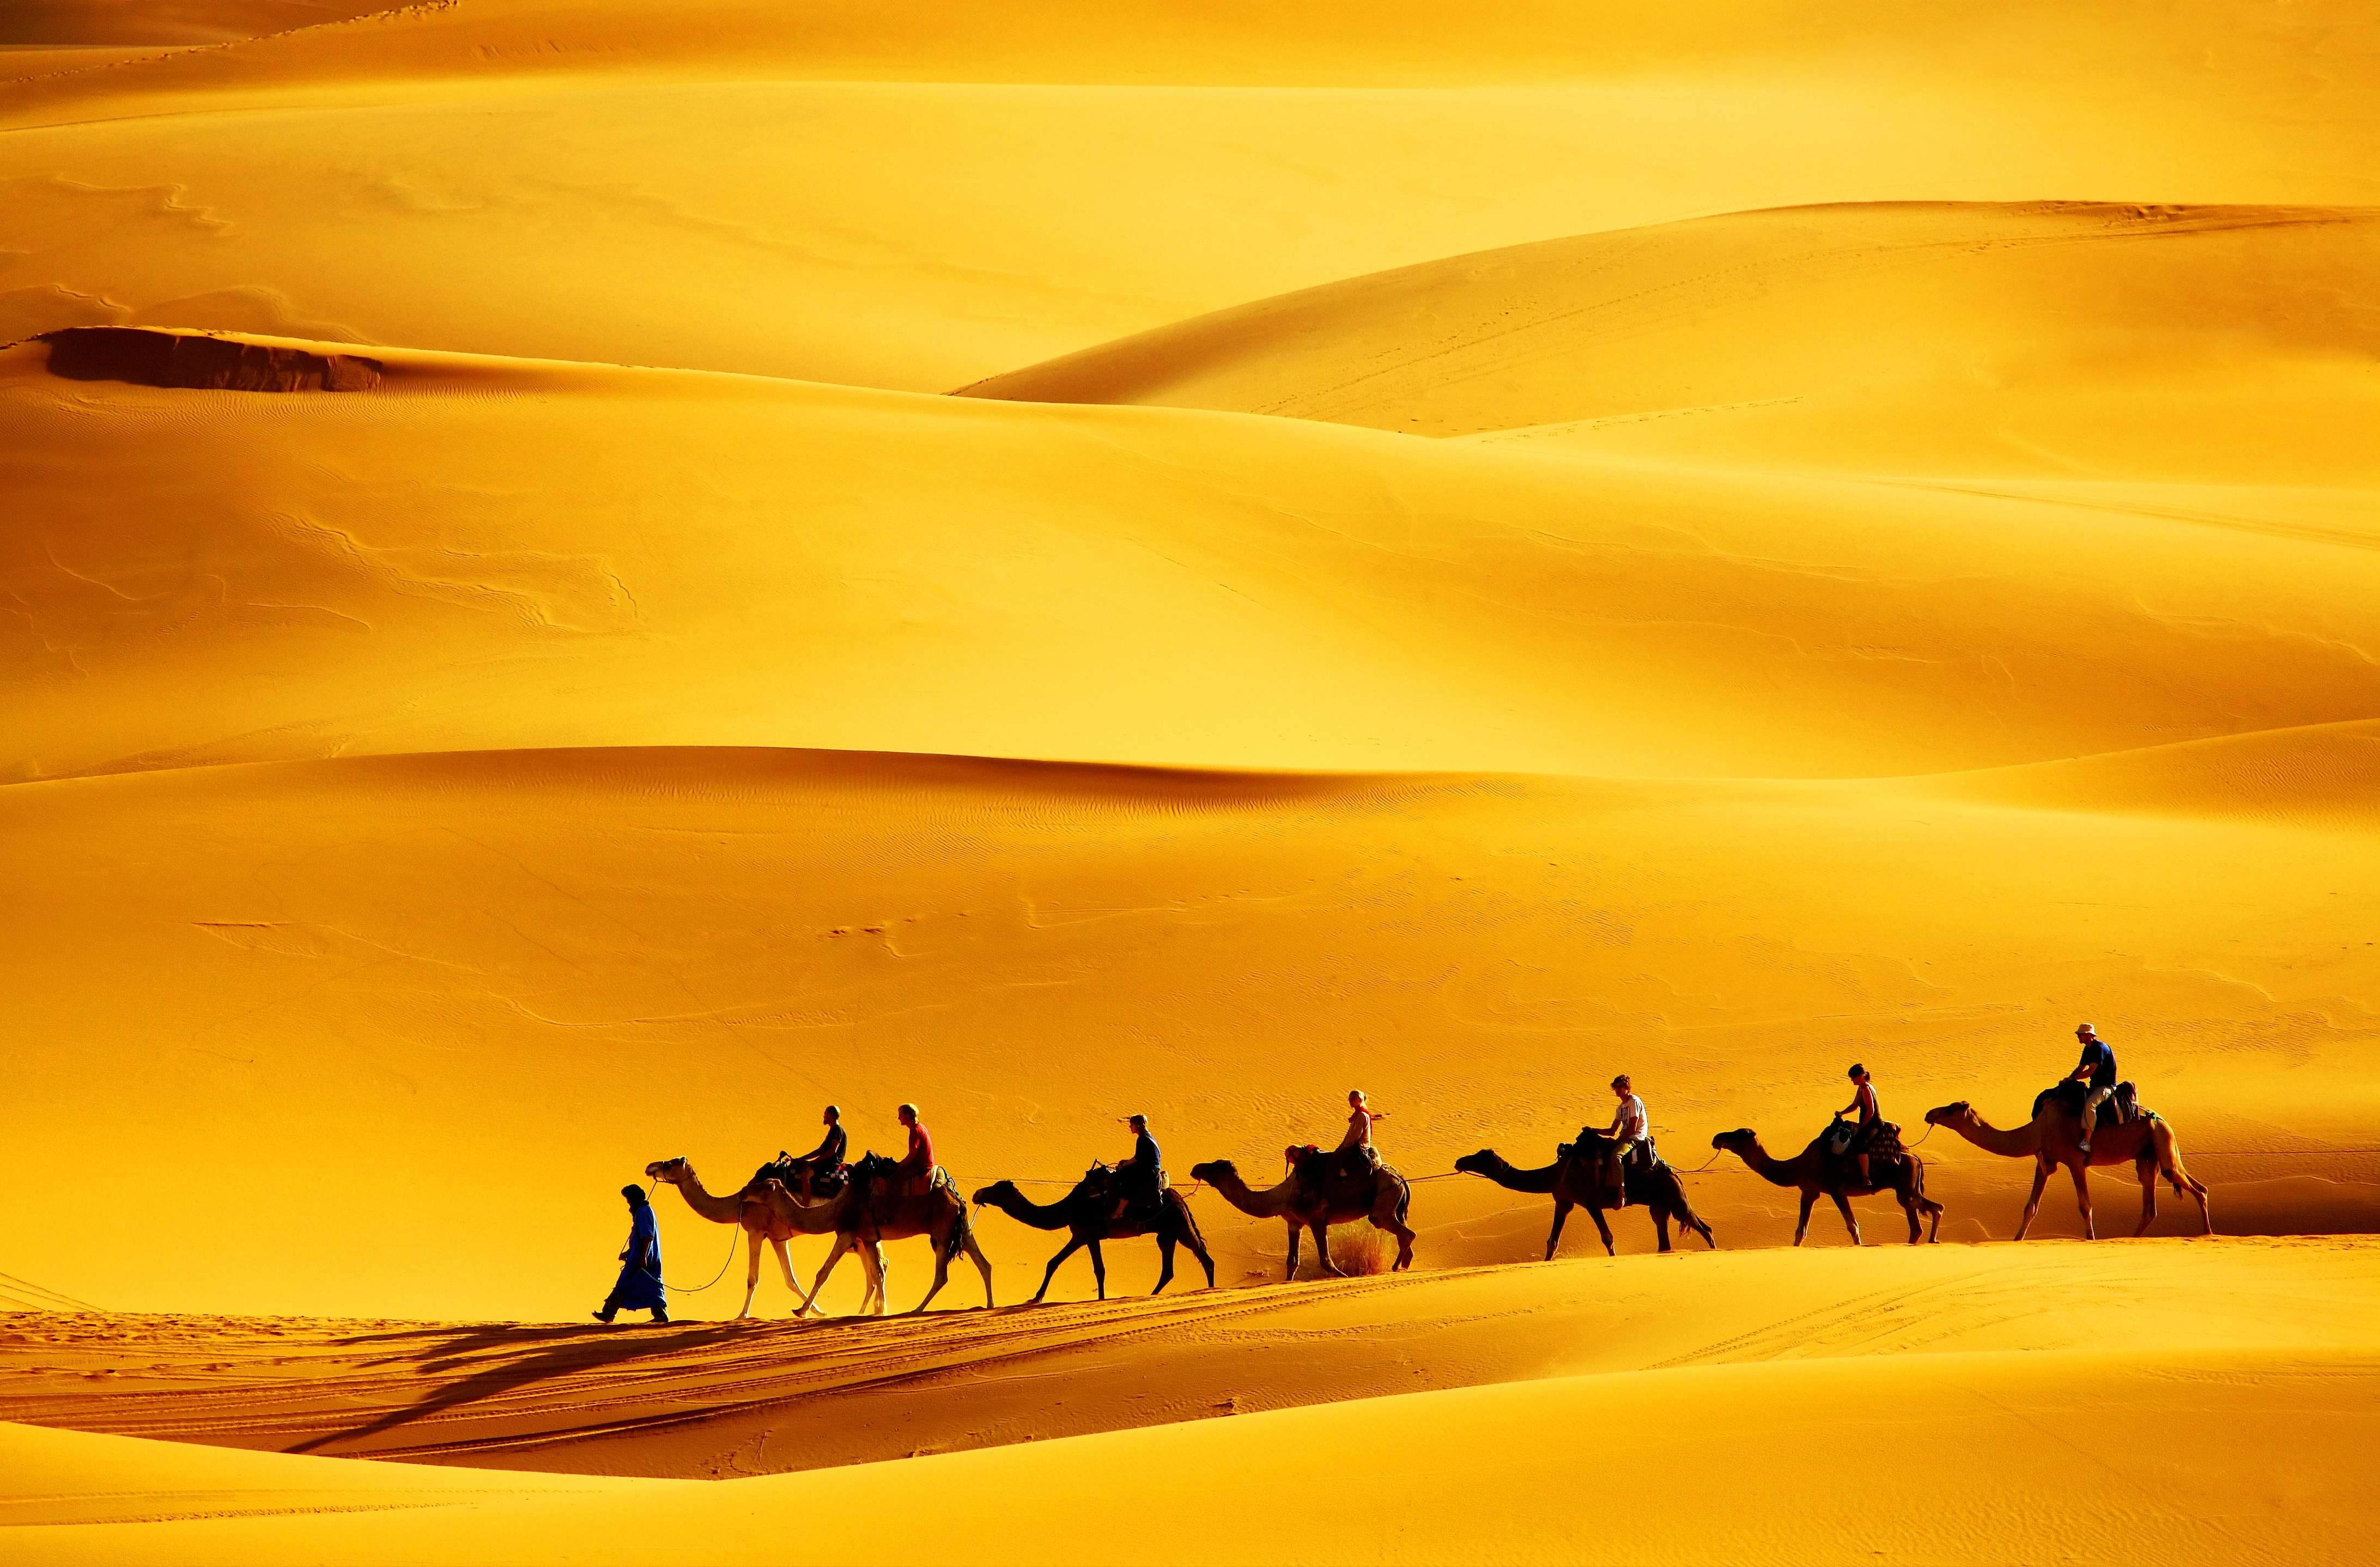 Караван движется. Пустыня Великий шелковый путь. Караван верблюдов Великого шёлкового пути. Великий шелковый путь Караван. Собаки лают Караван идет.